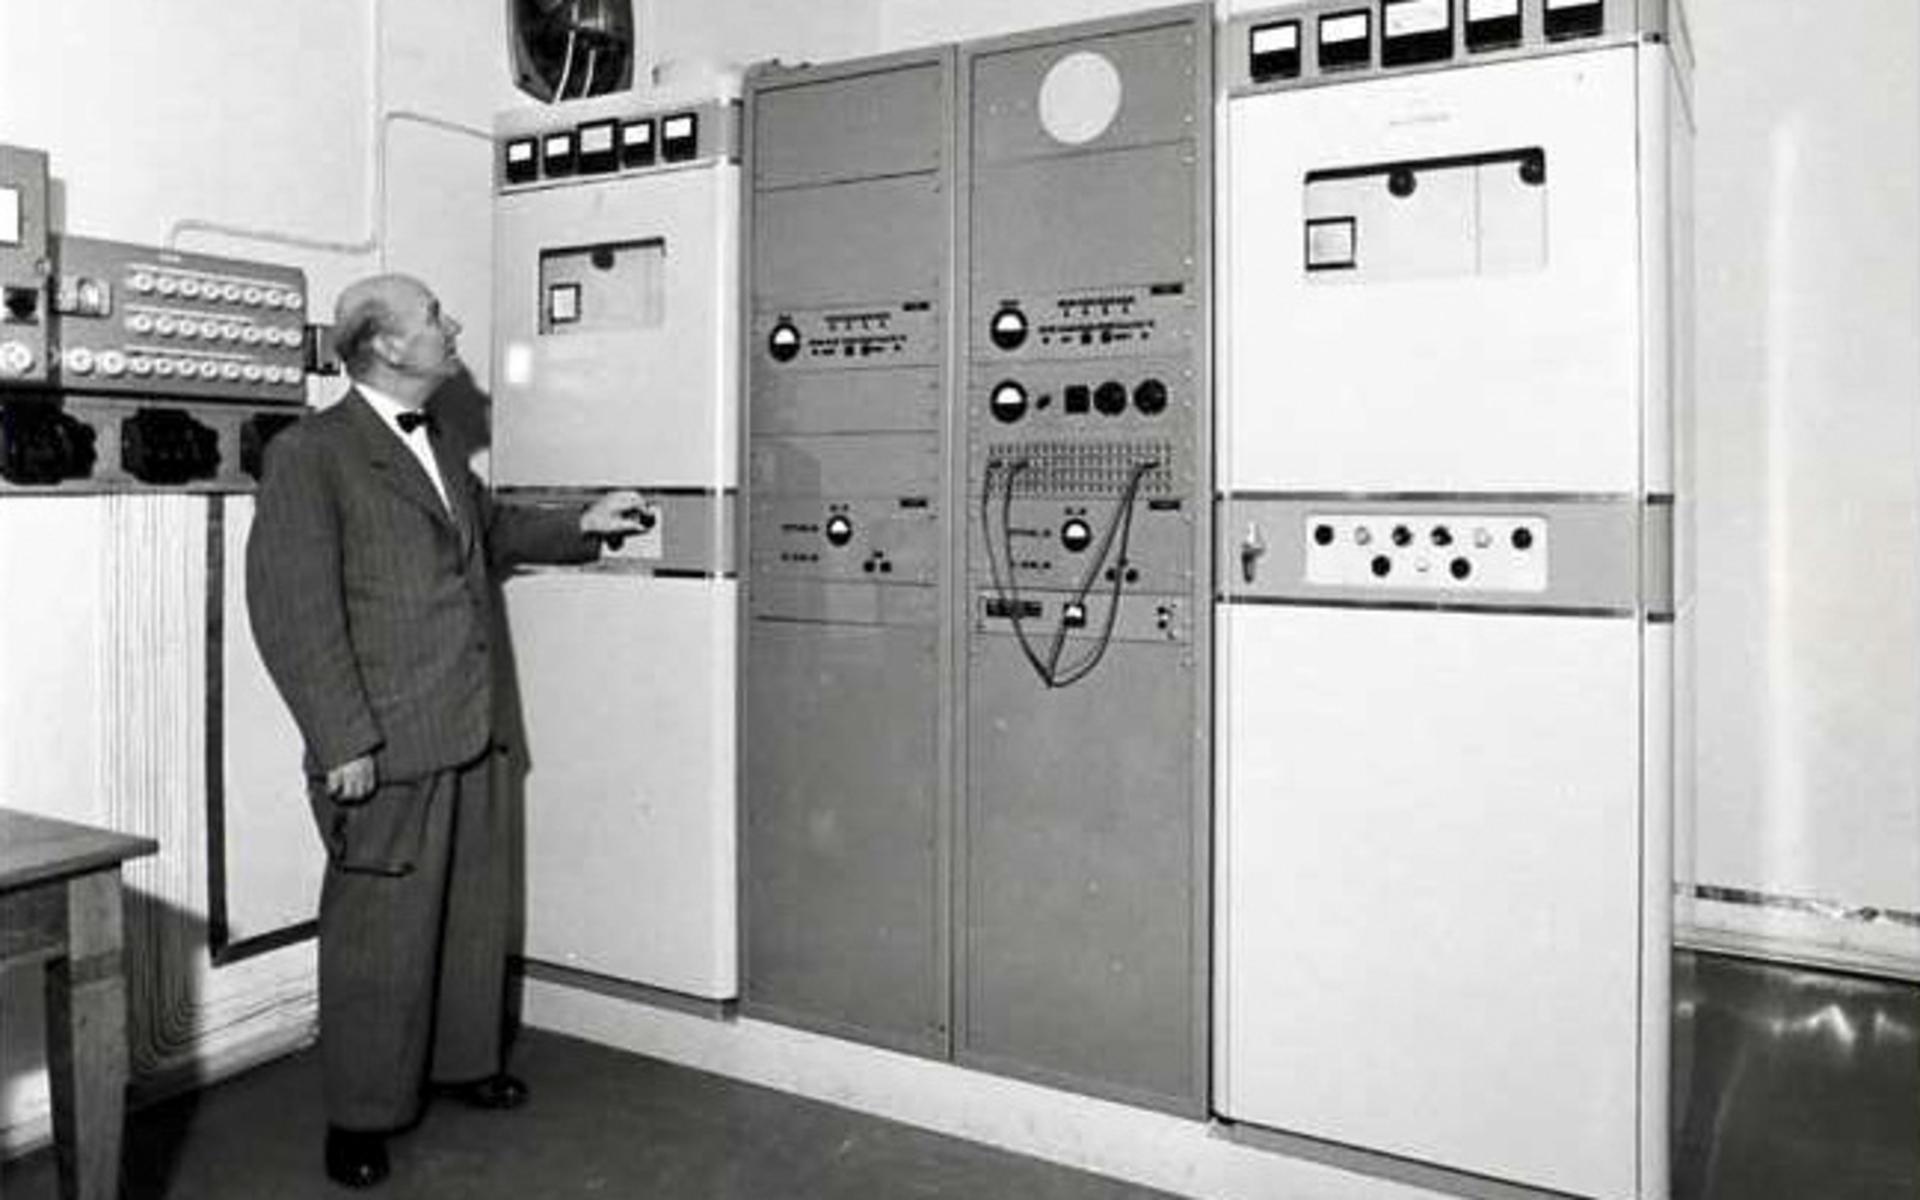 TV-sändaren i Grimeton är nyinstallerad 1959 och visas av Hans Palmqvist byggdes av Televerket Radio, som blev Teracom 1992 som står för dagens sändningar. Byggnaden finns kvar och står vid fjärde masten (räknat från gamla stationen). Sändaren satt i fyrans mast.